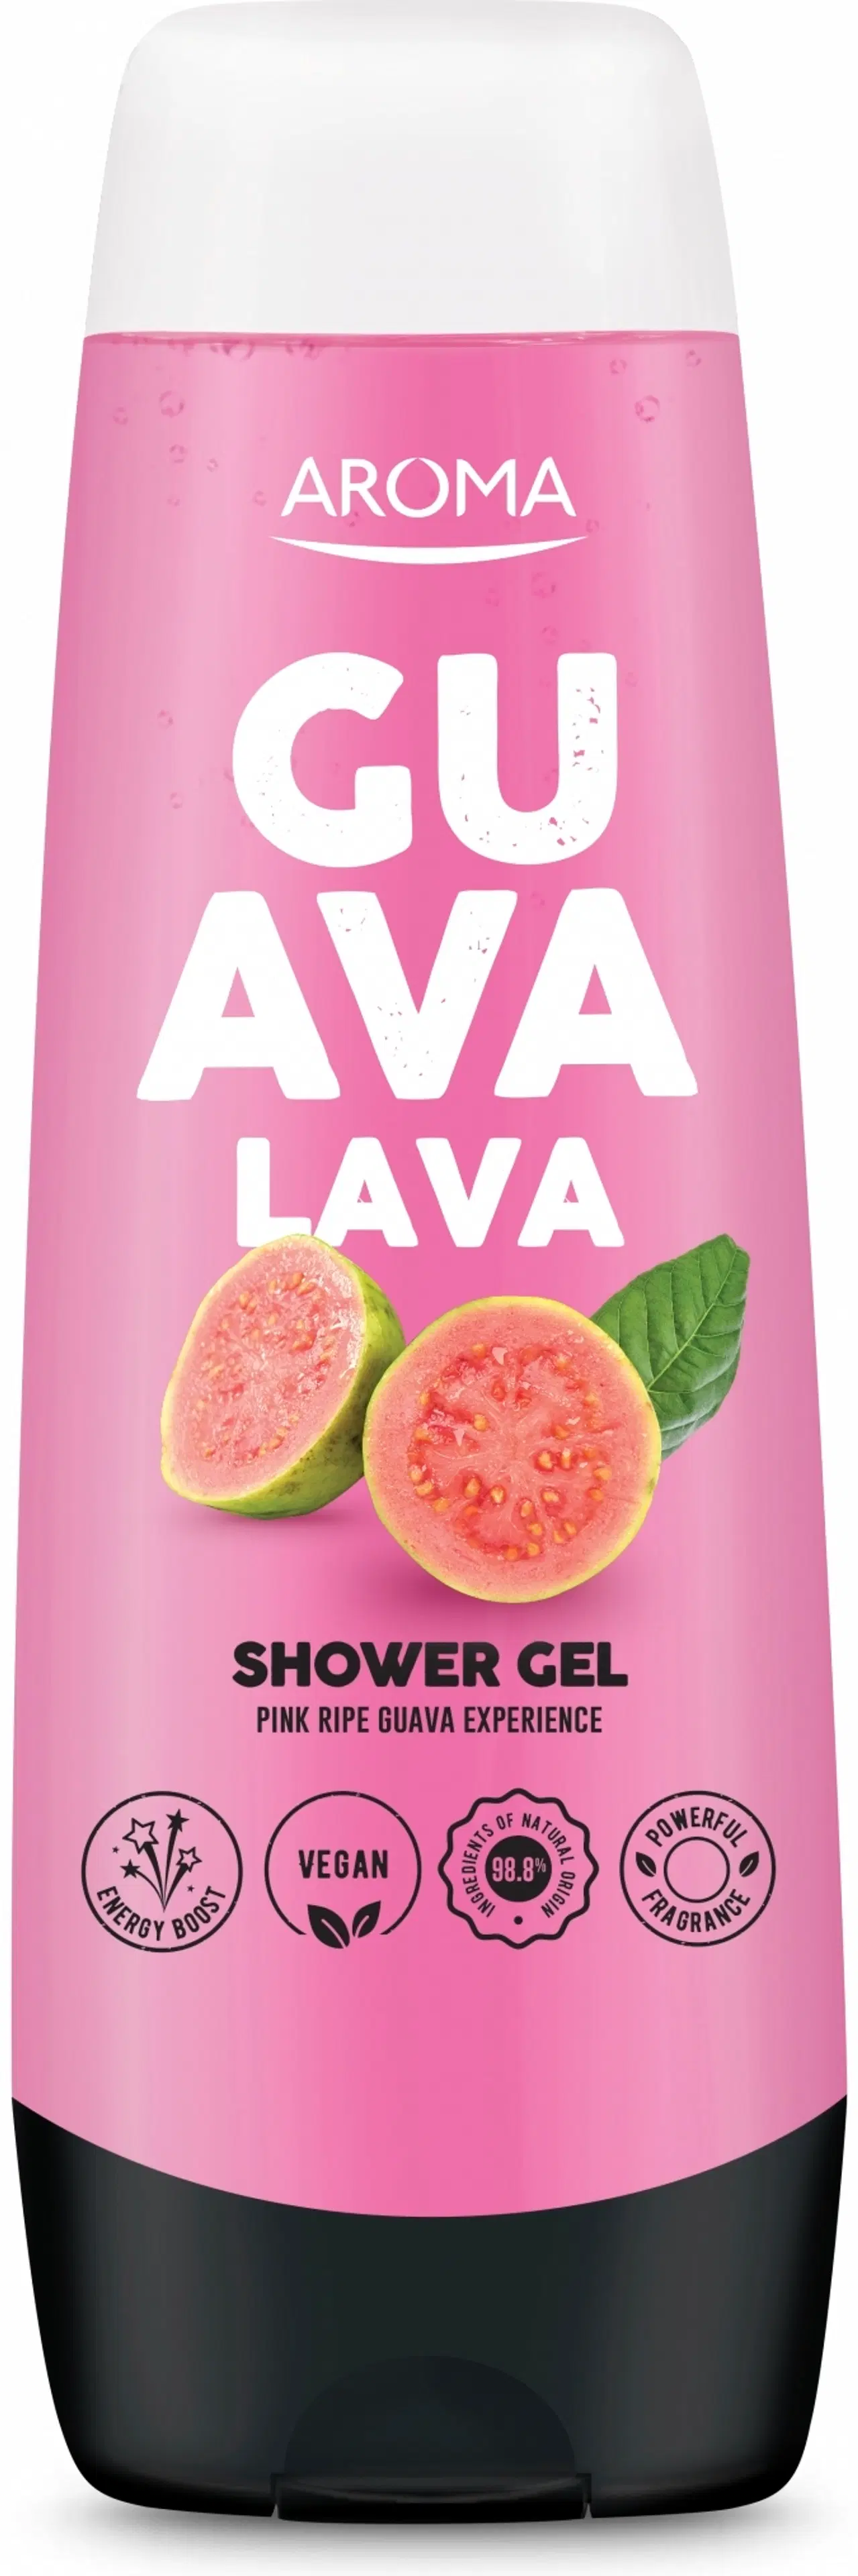 Aroma Guava Lava suihkugeeli 250 ml